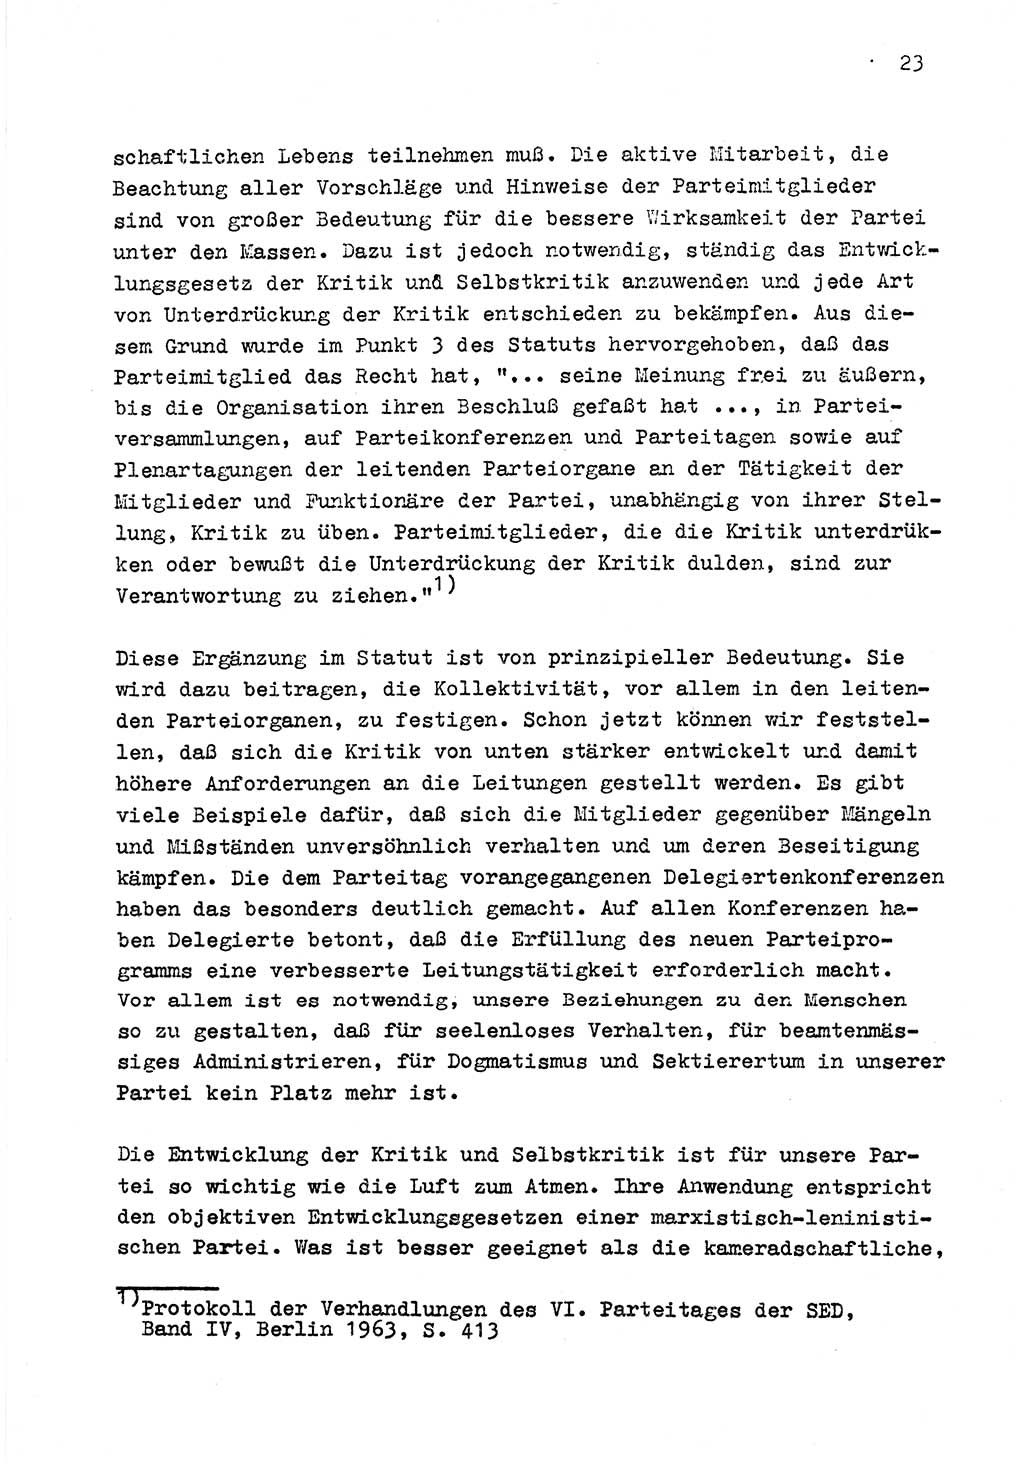 Zu Fragen der Parteiarbeit [Sozialistische Einheitspartei Deutschlands (SED) Deutsche Demokratische Republik (DDR)] 1979, Seite 23 (Fr. PA SED DDR 1979, S. 23)